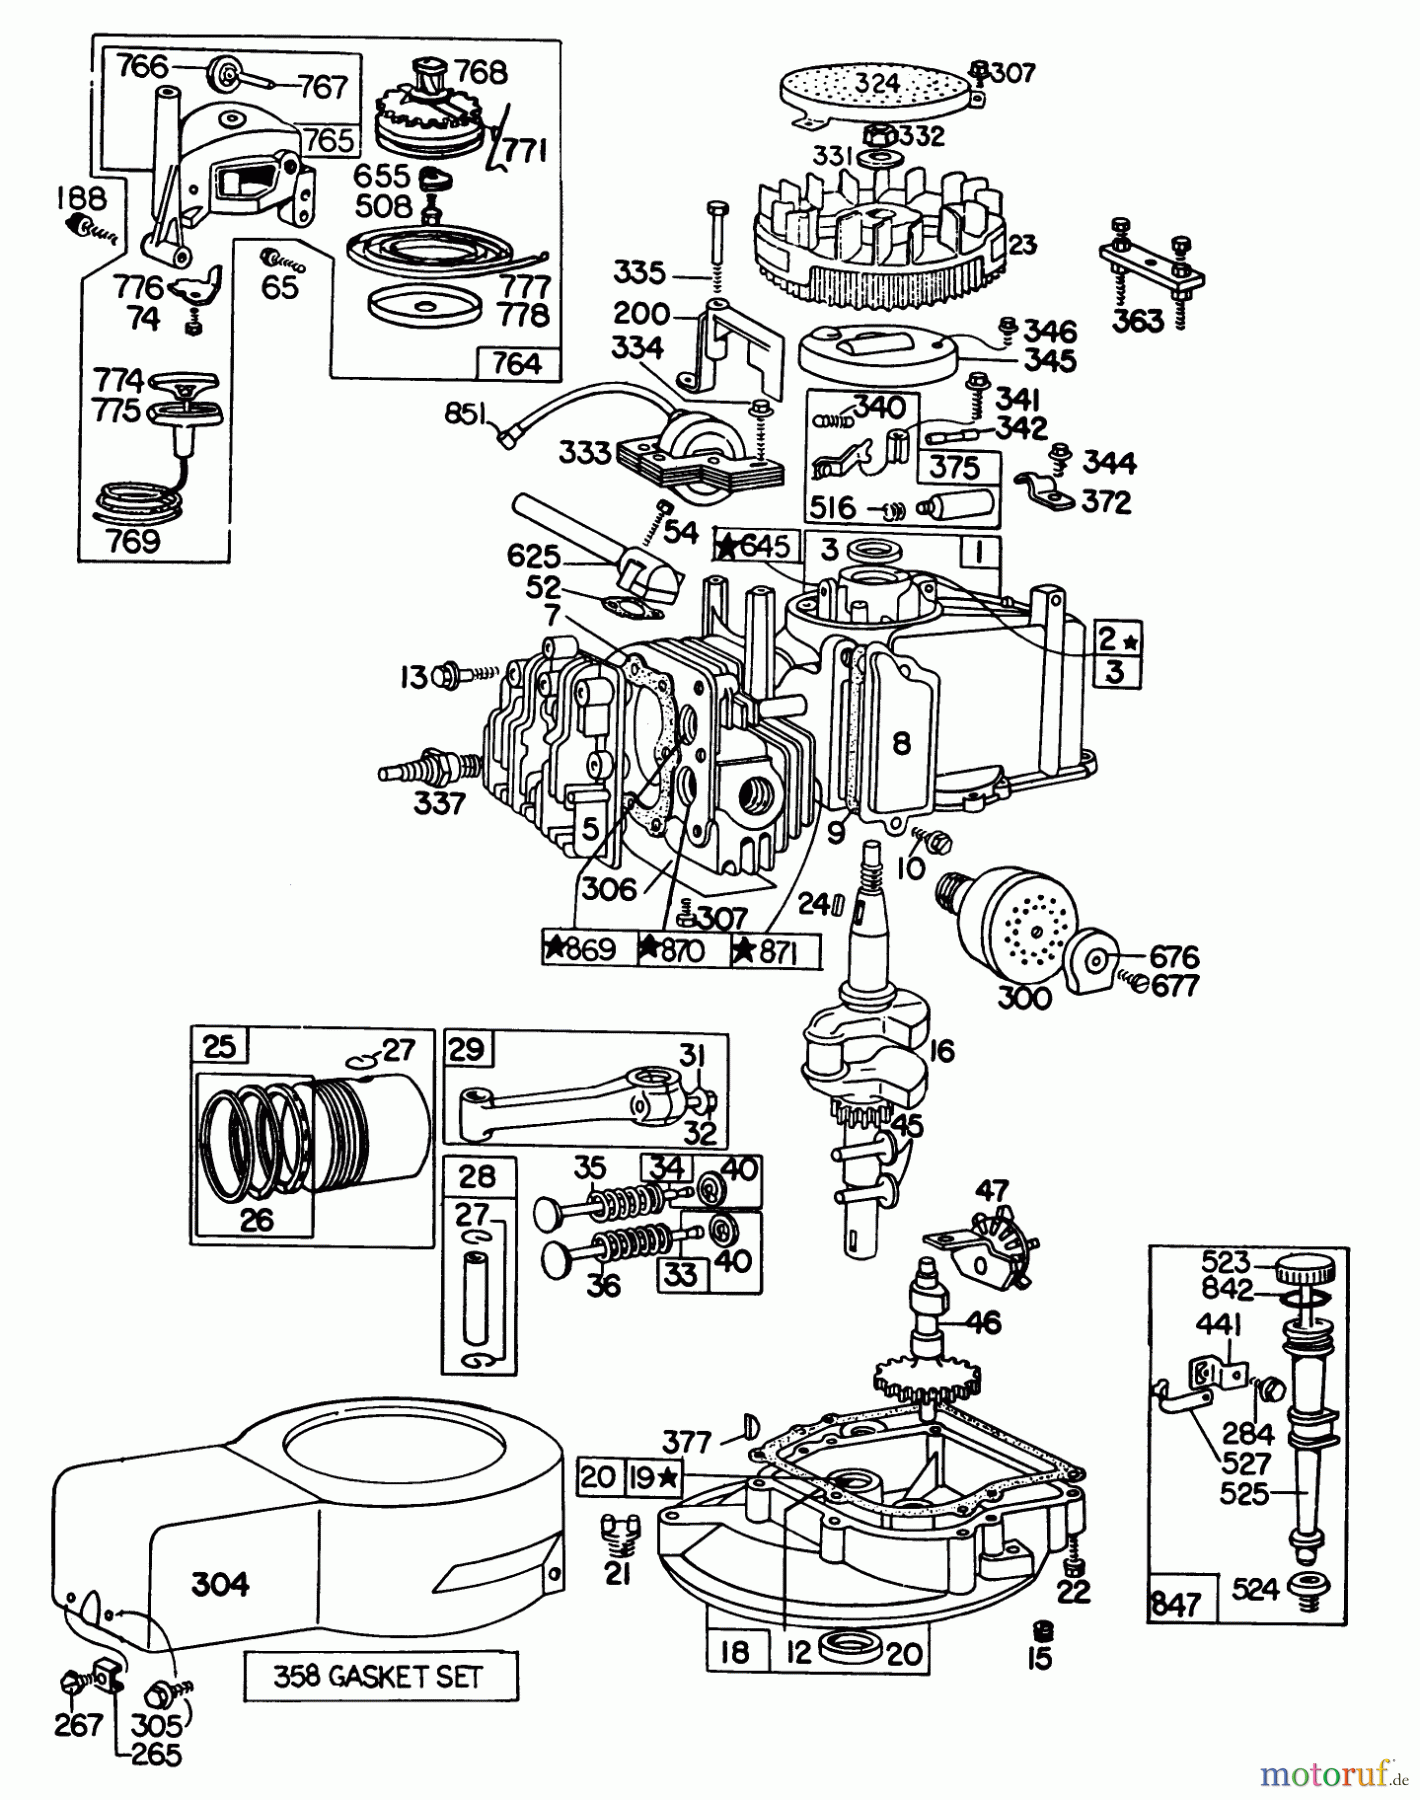  Toro Neu Mowers, Walk-Behind Seite 1 16300 - Toro Lawnmower, 1980 (0000001-0999999) ENGINE BRIGGS & STRATTON MODEL 92508-1000-02 FOR 19